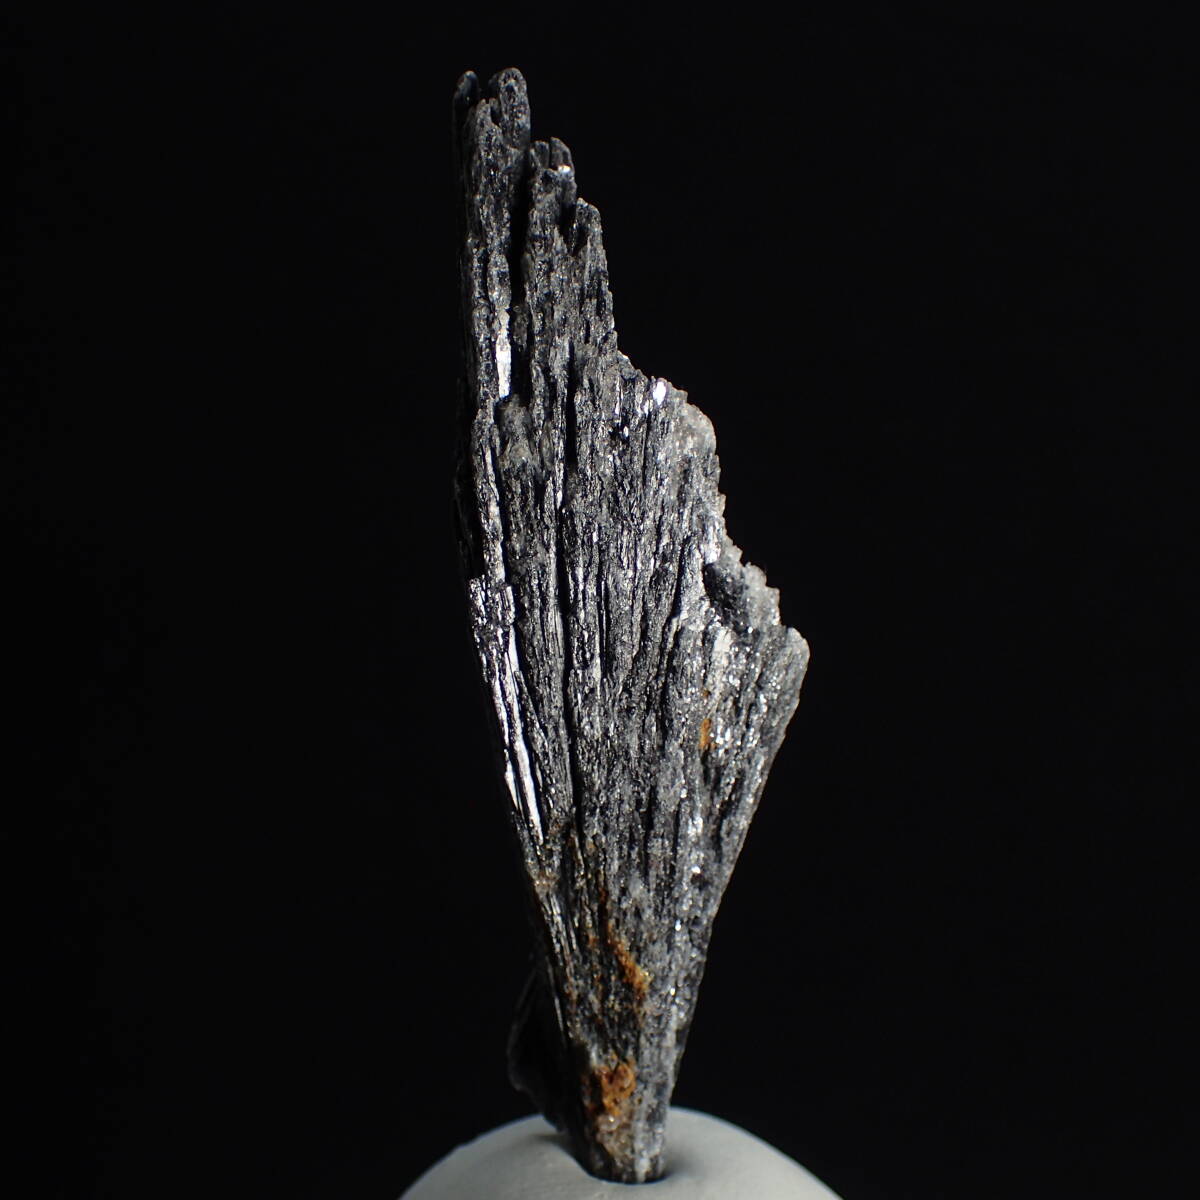 ブラジル産 ブラックカイヤナイト a 天然石 原石 鉱物 藍晶石 カイヤナイト パワーストーン 100スタ_画像2